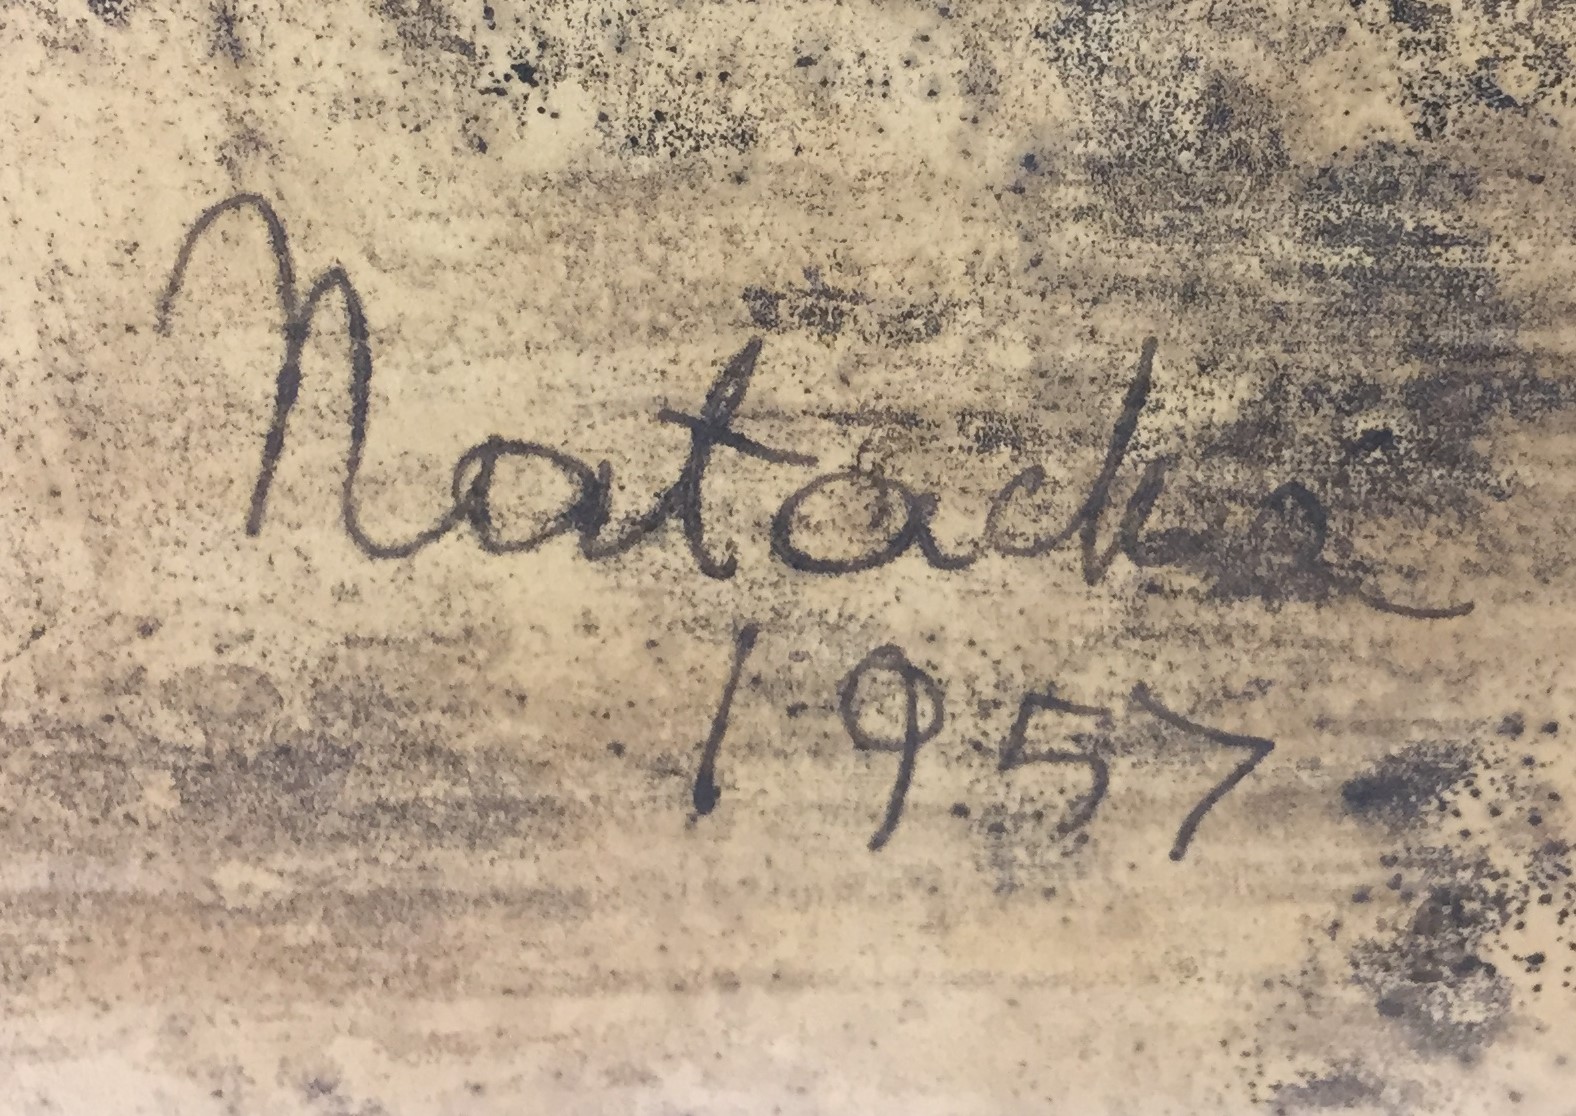 Signature, NW. 1957